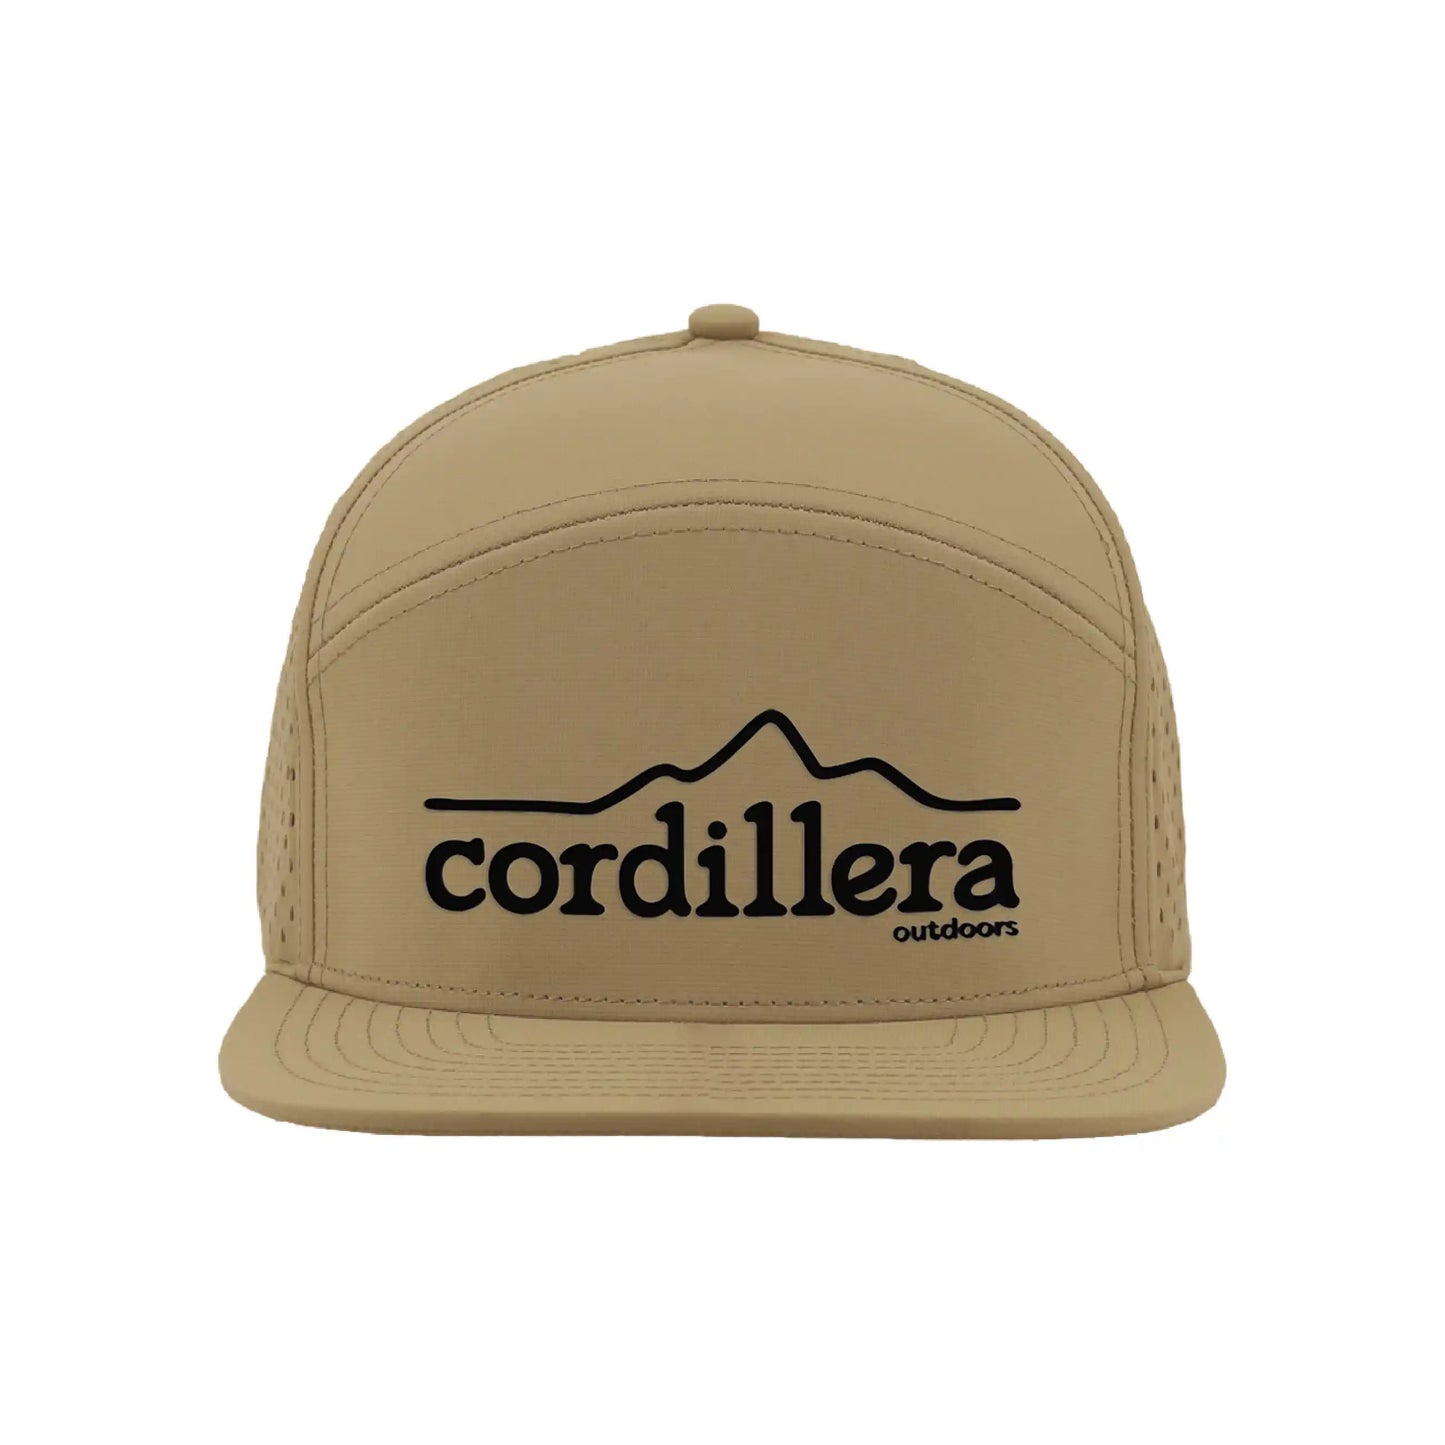 Cordillera Outdoors Signature - Performance Cap